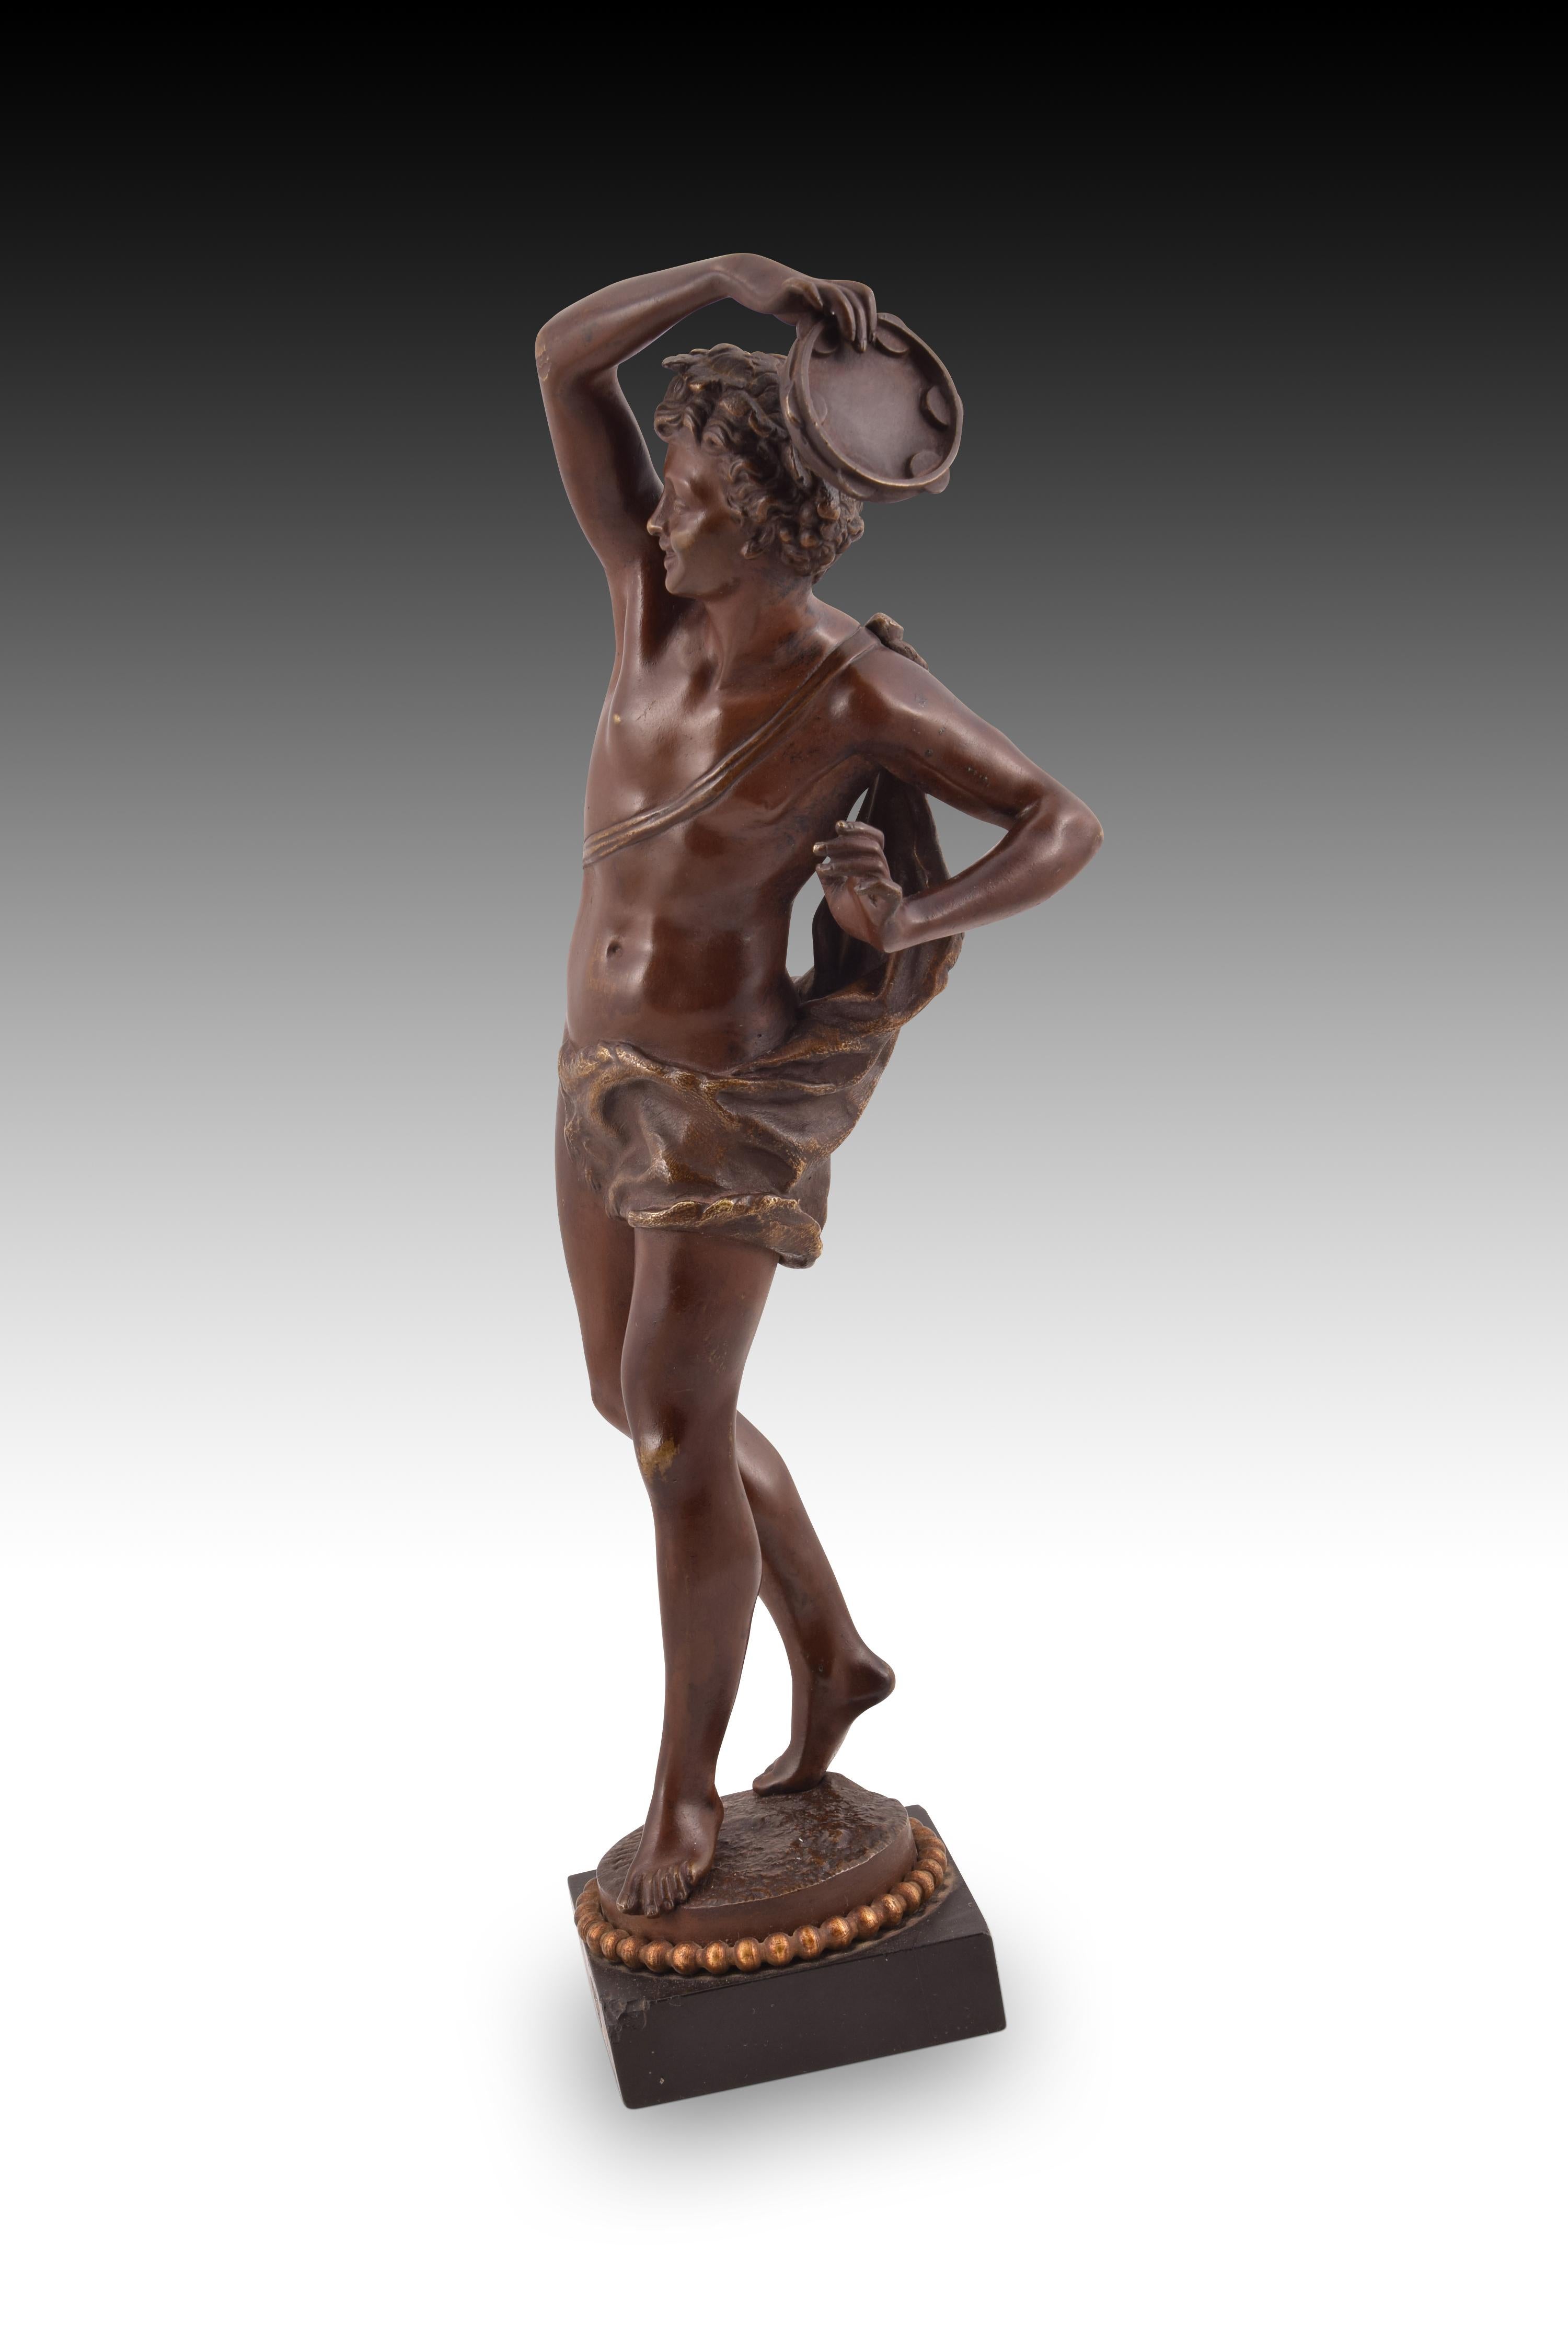 Sculpture en bronze Harmony. RANCOULET, Ernest (France, 1870-1915).
 Il présente de petits défauts. 
Sur une base carrée, une forme circulaire avec un collier de perles et une finition rocheuse au sommet sert de support à une jeune figure masculine